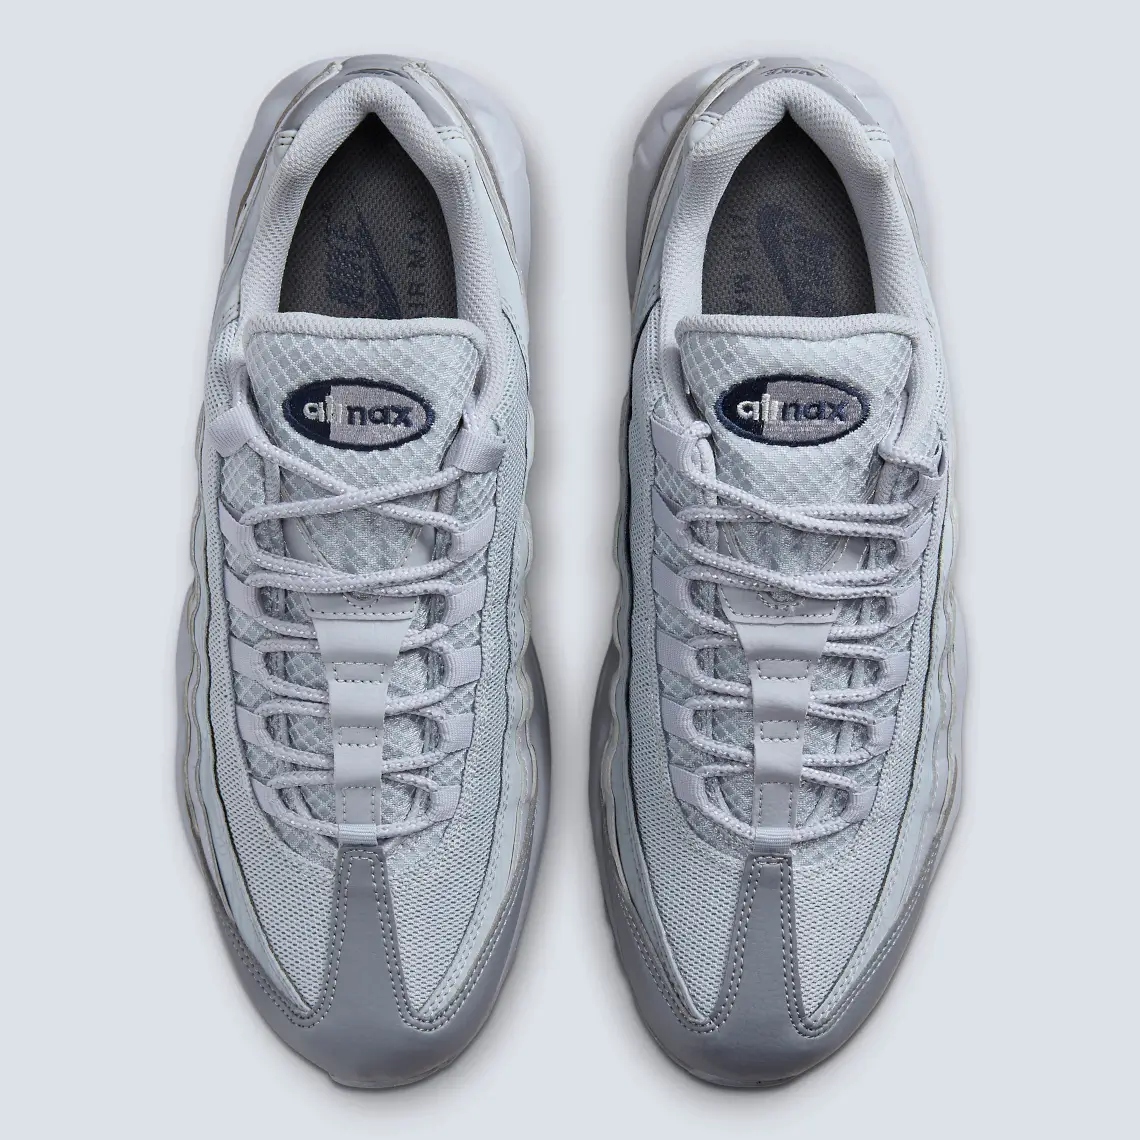 Greyscale Nike Air Max 95 Blue Navy Logos